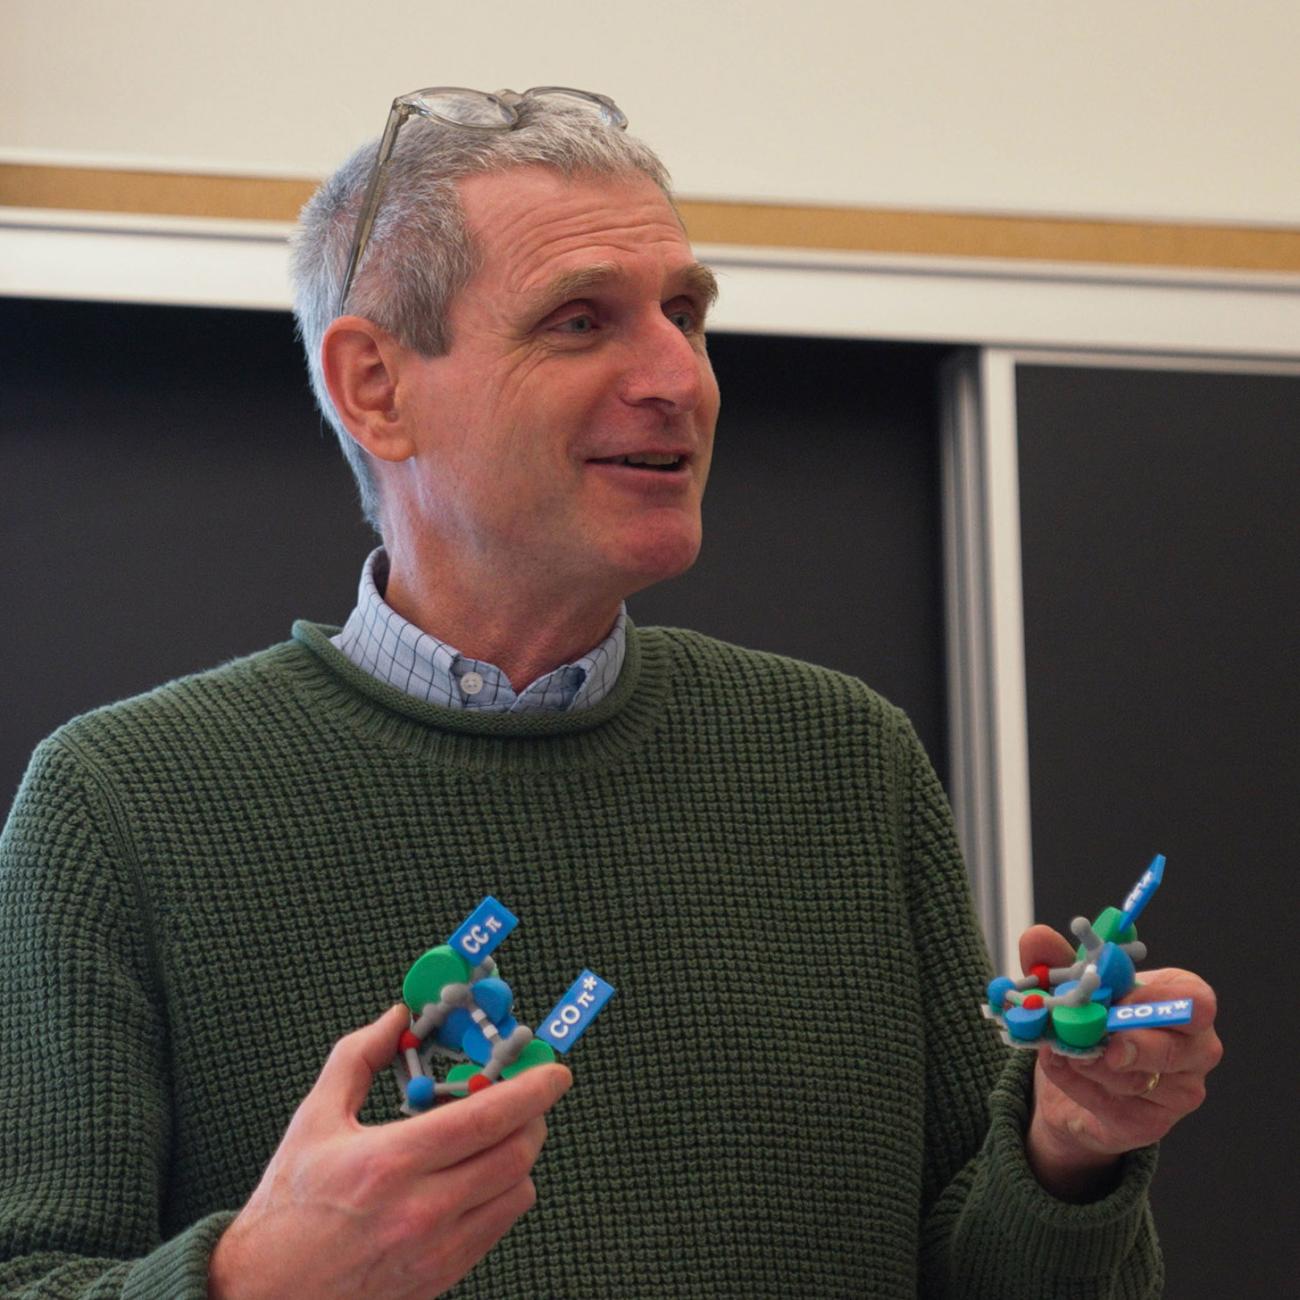 Professor Daniel J. O'Leary holds an orbital model in each hand in organic chemistry class